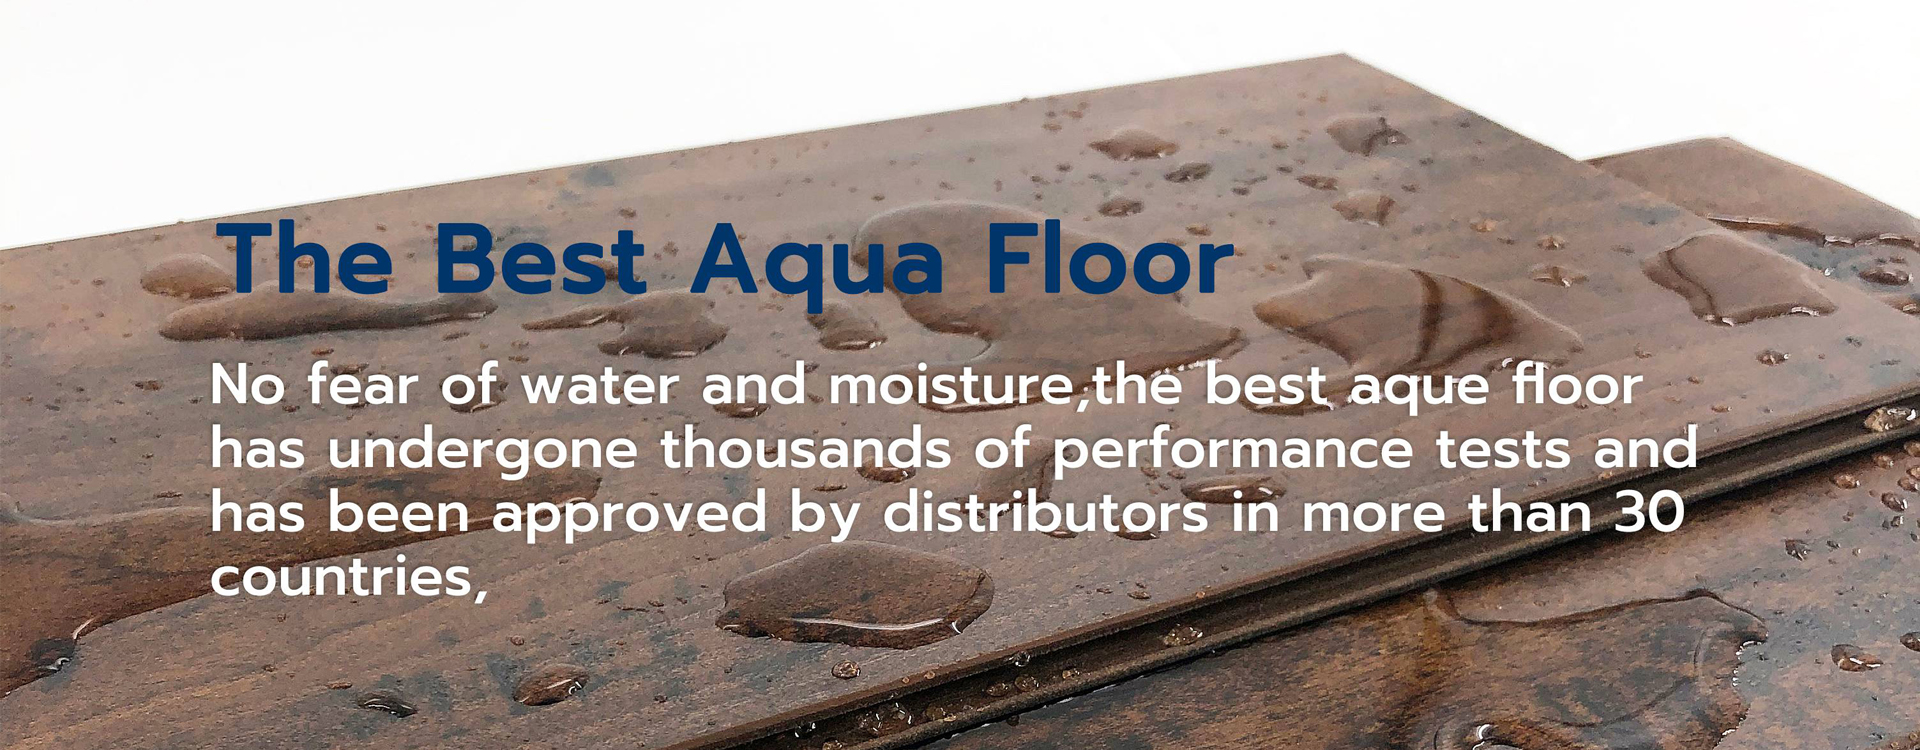 The Best Aqua Floor banner